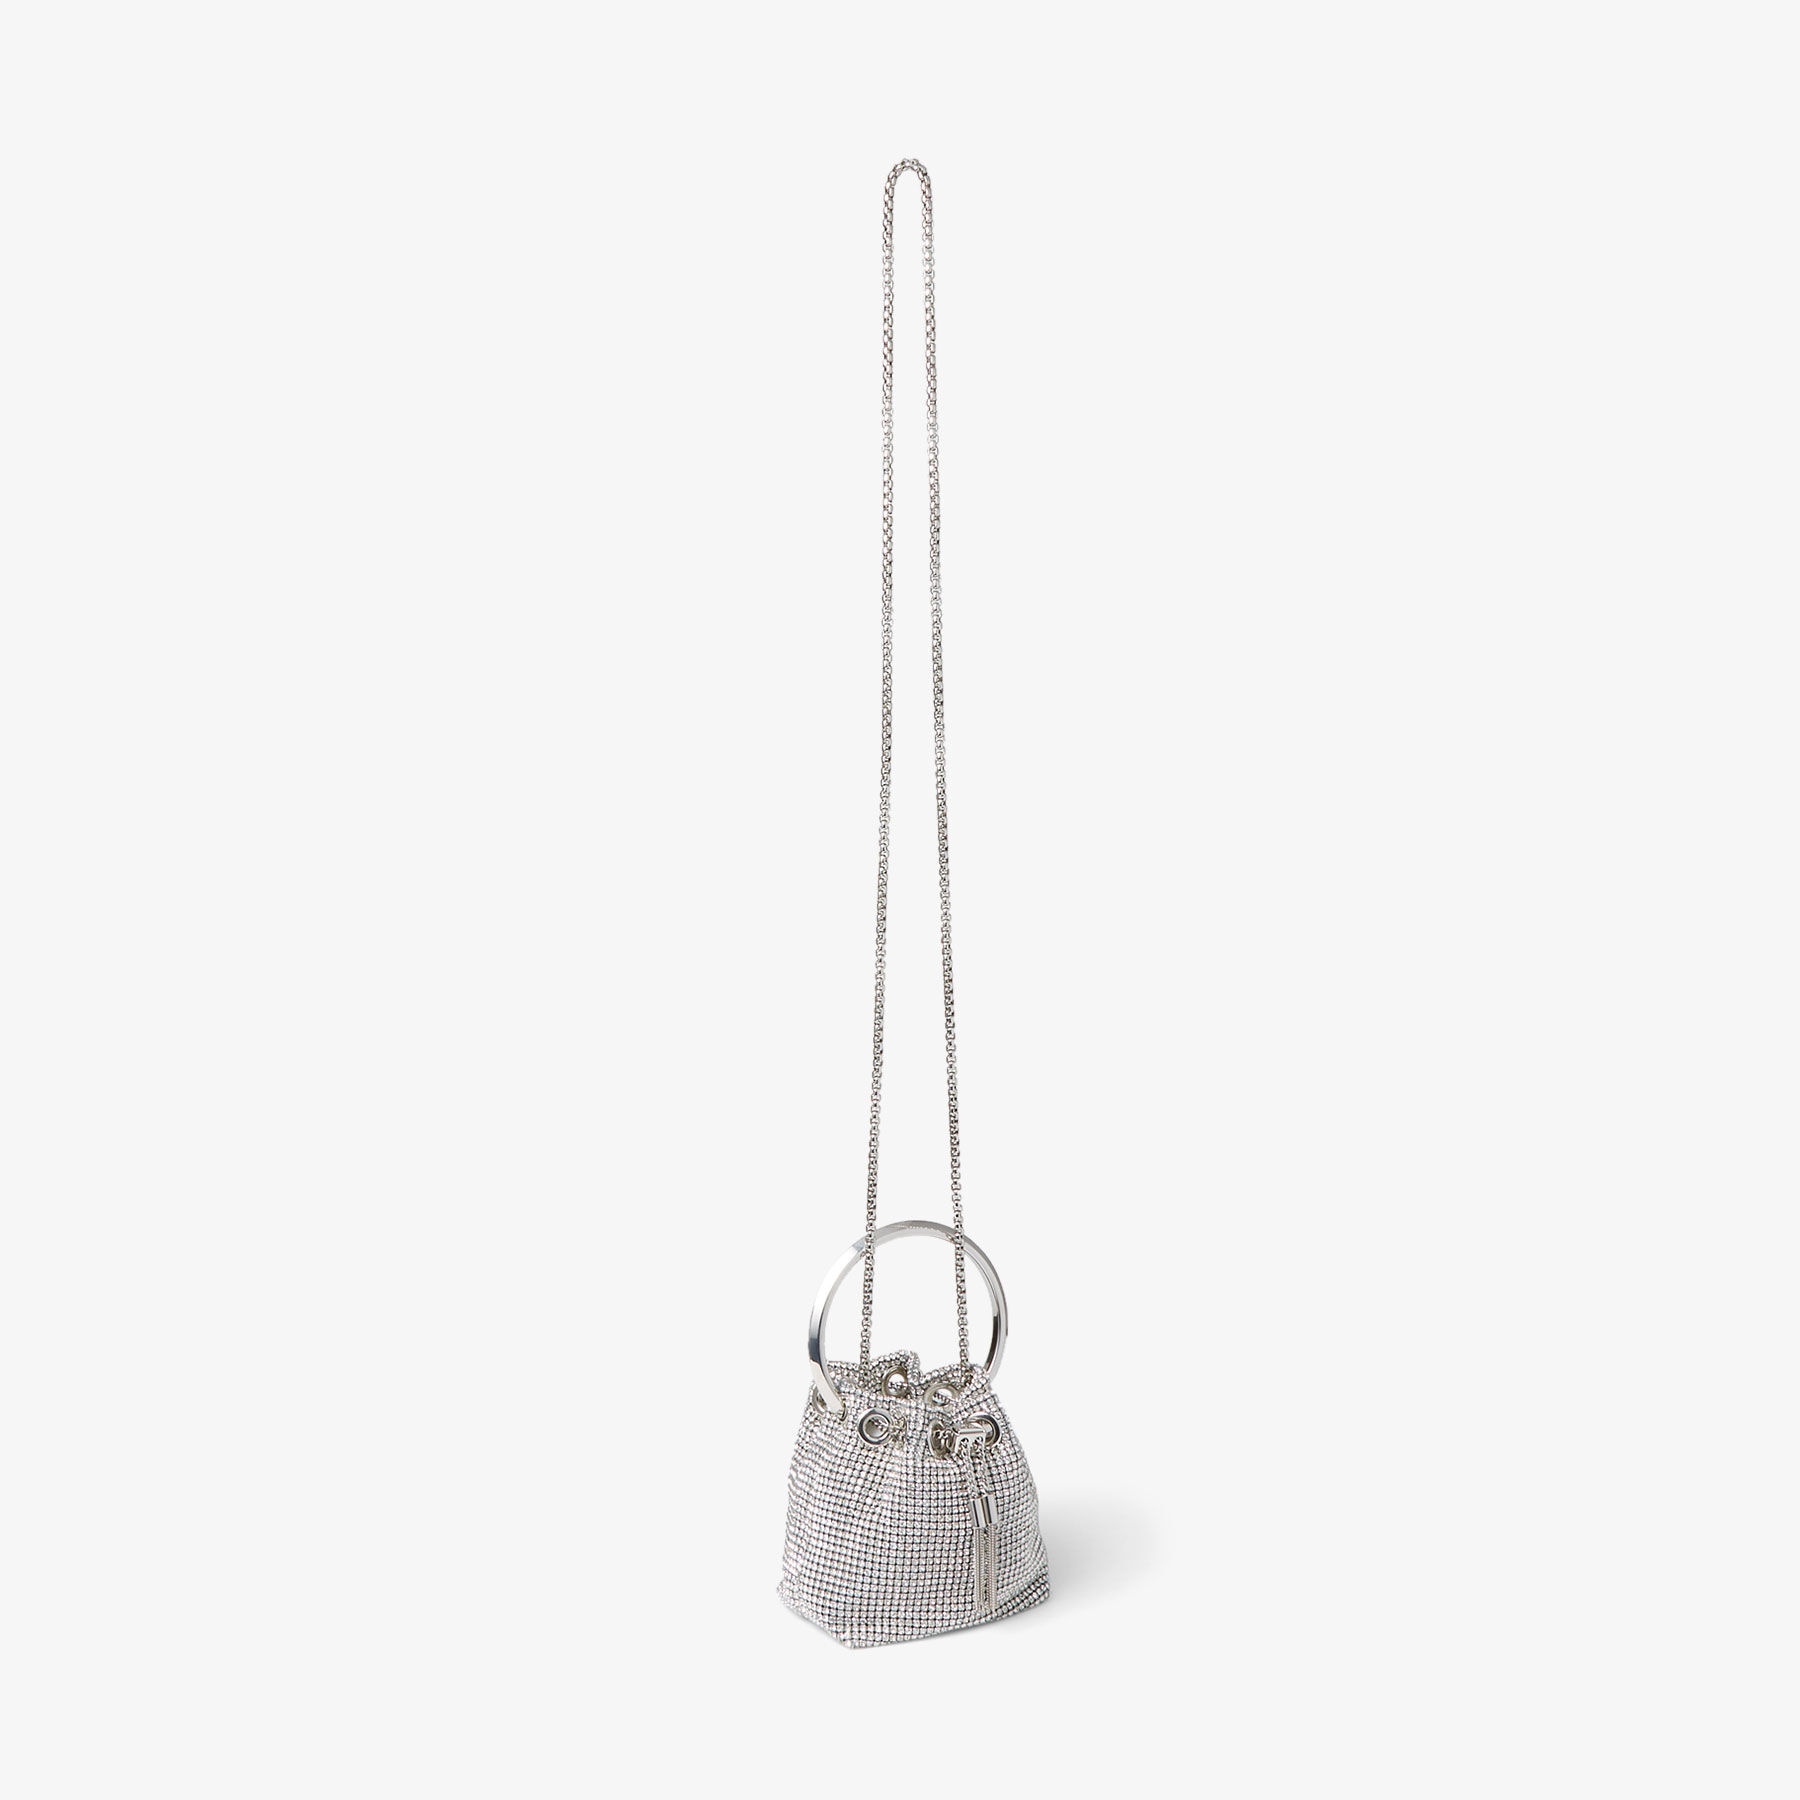 Micro Bon Bon
Silver Crystal Mesh Bag with Crystal Handle - 6